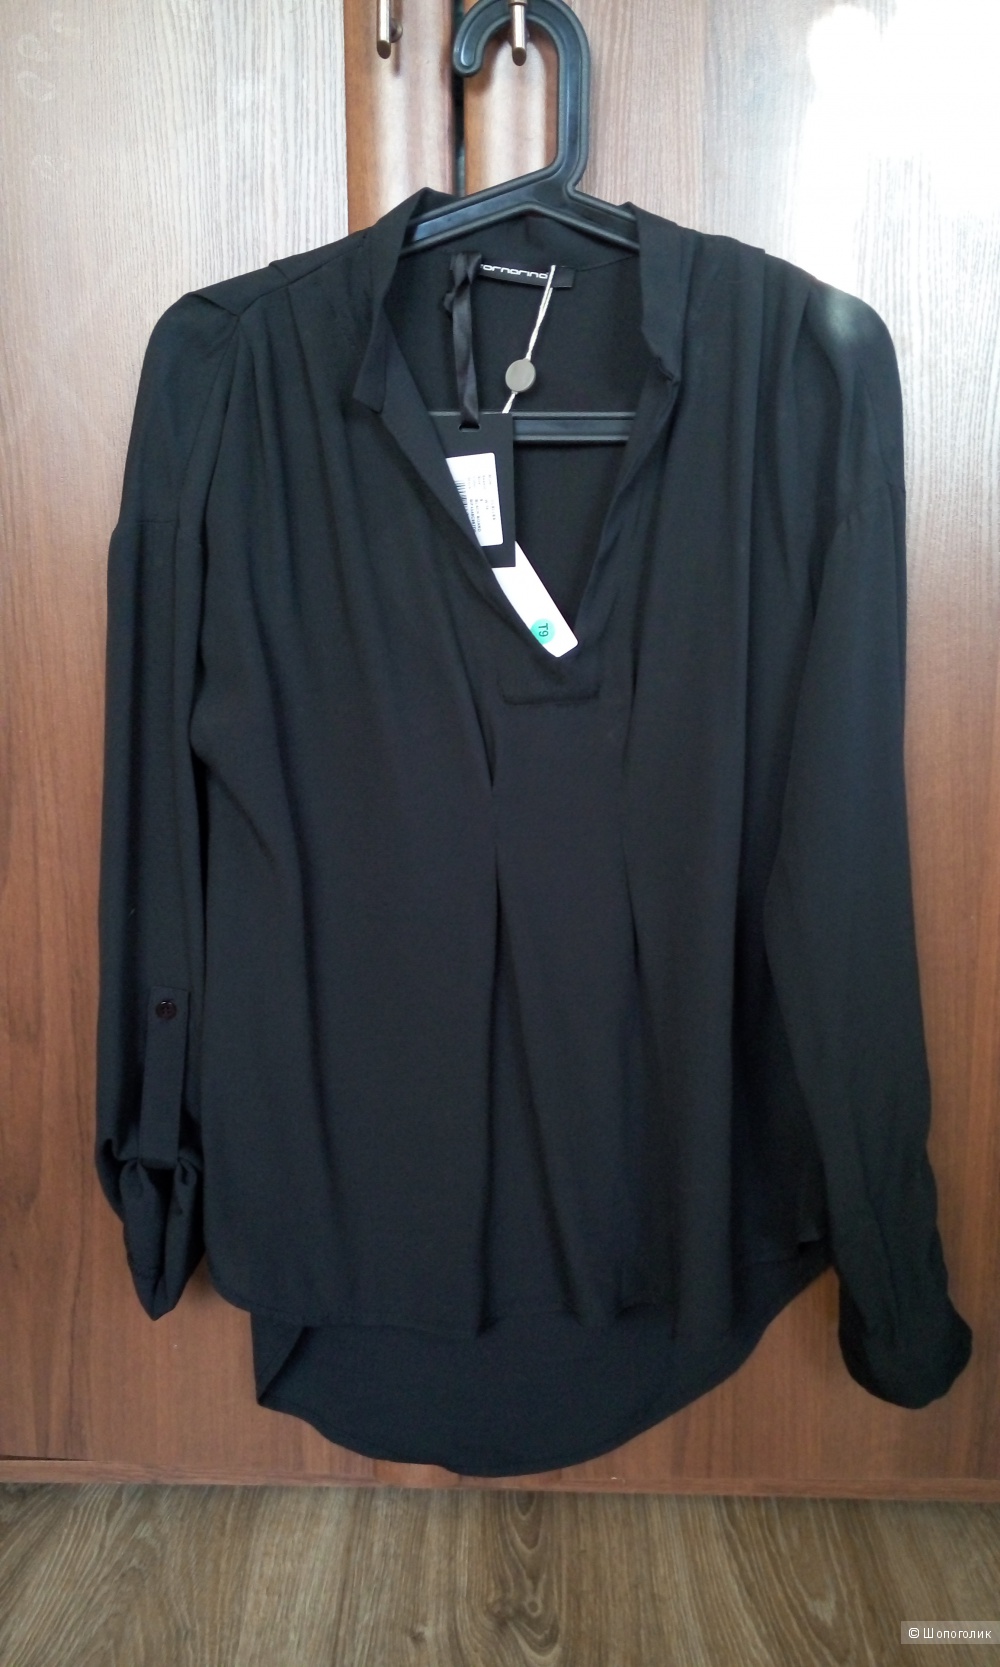 Новая блузка итальянского бренда Fornarina размер S.Большемерка.